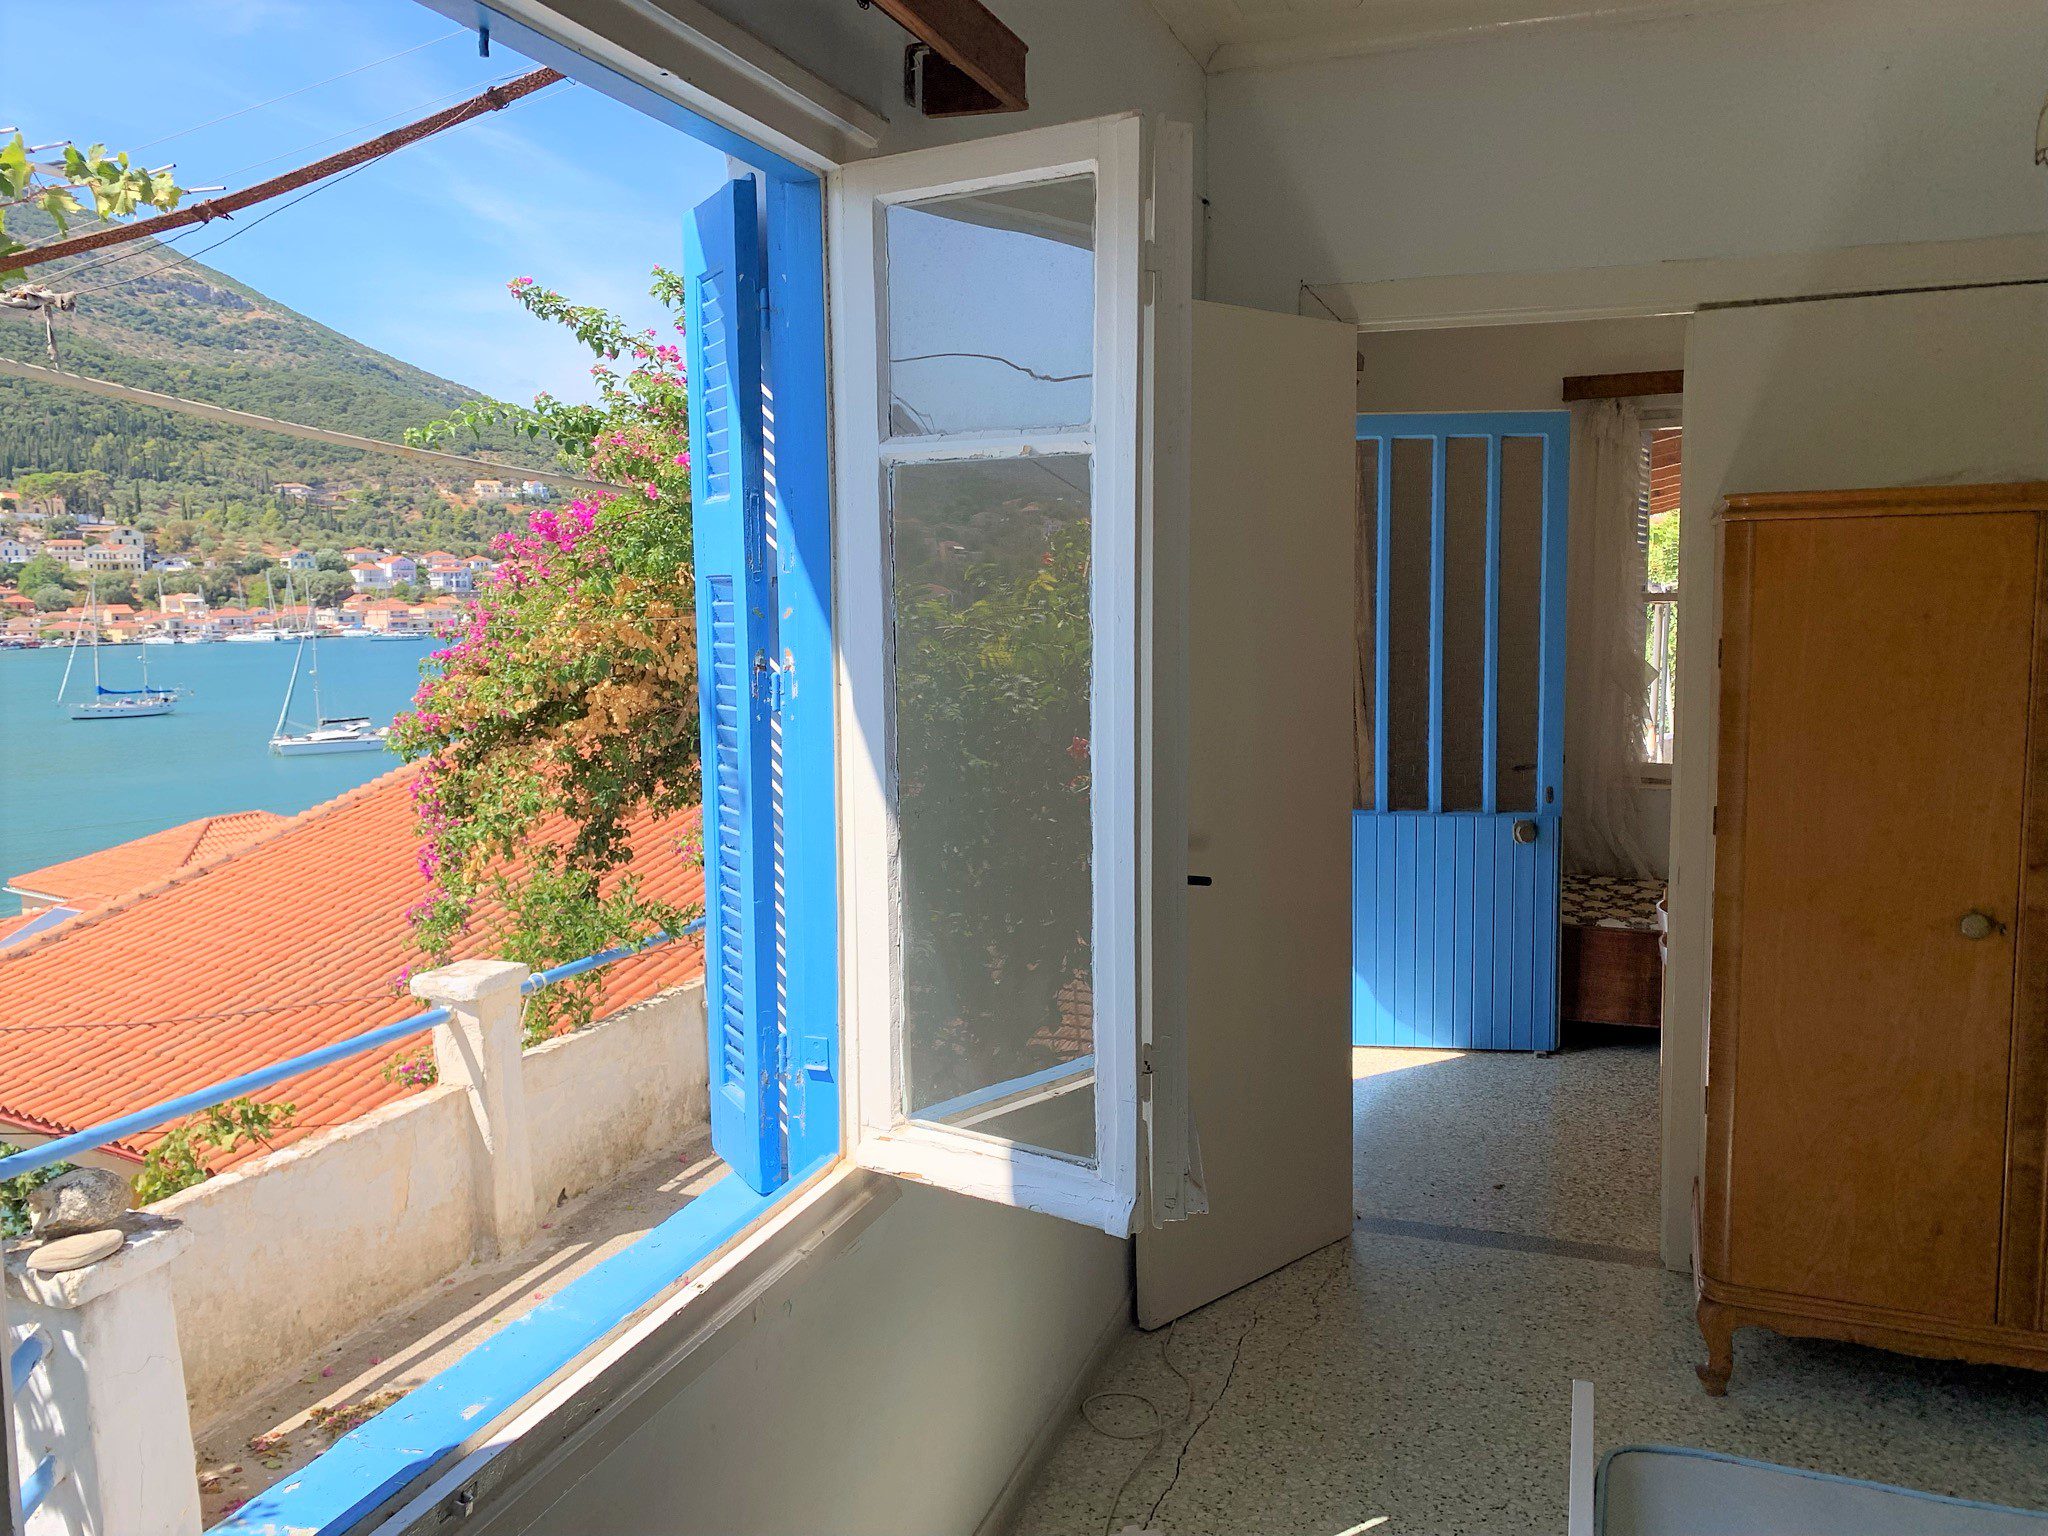 Υπνοδωμάτιο και θέα από το σπίτι προς πώληση Ιθάκι Ελλάδα, Βαθύ